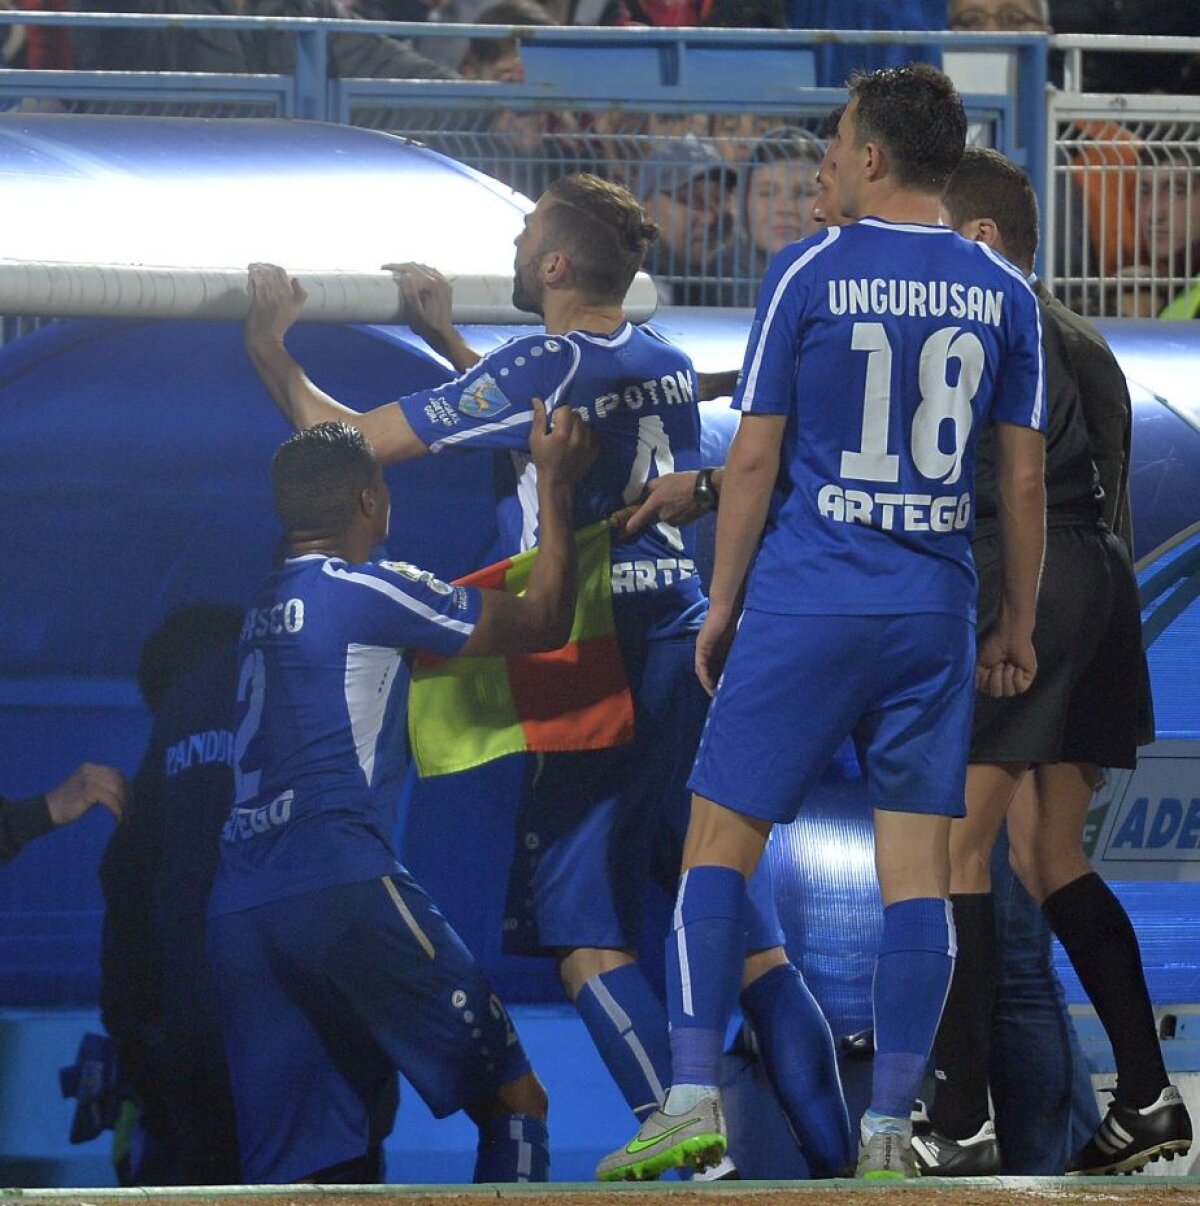 FOTO Săpunaru, incendiar la finalul meciului cu Steaua, 0-1: "Dacă trebuie să iasă aștia campioni, să ne spună și nouă, să ne dăm la o parte". Și Ropotan era să se bată cu fanii roș-albaștrilor!